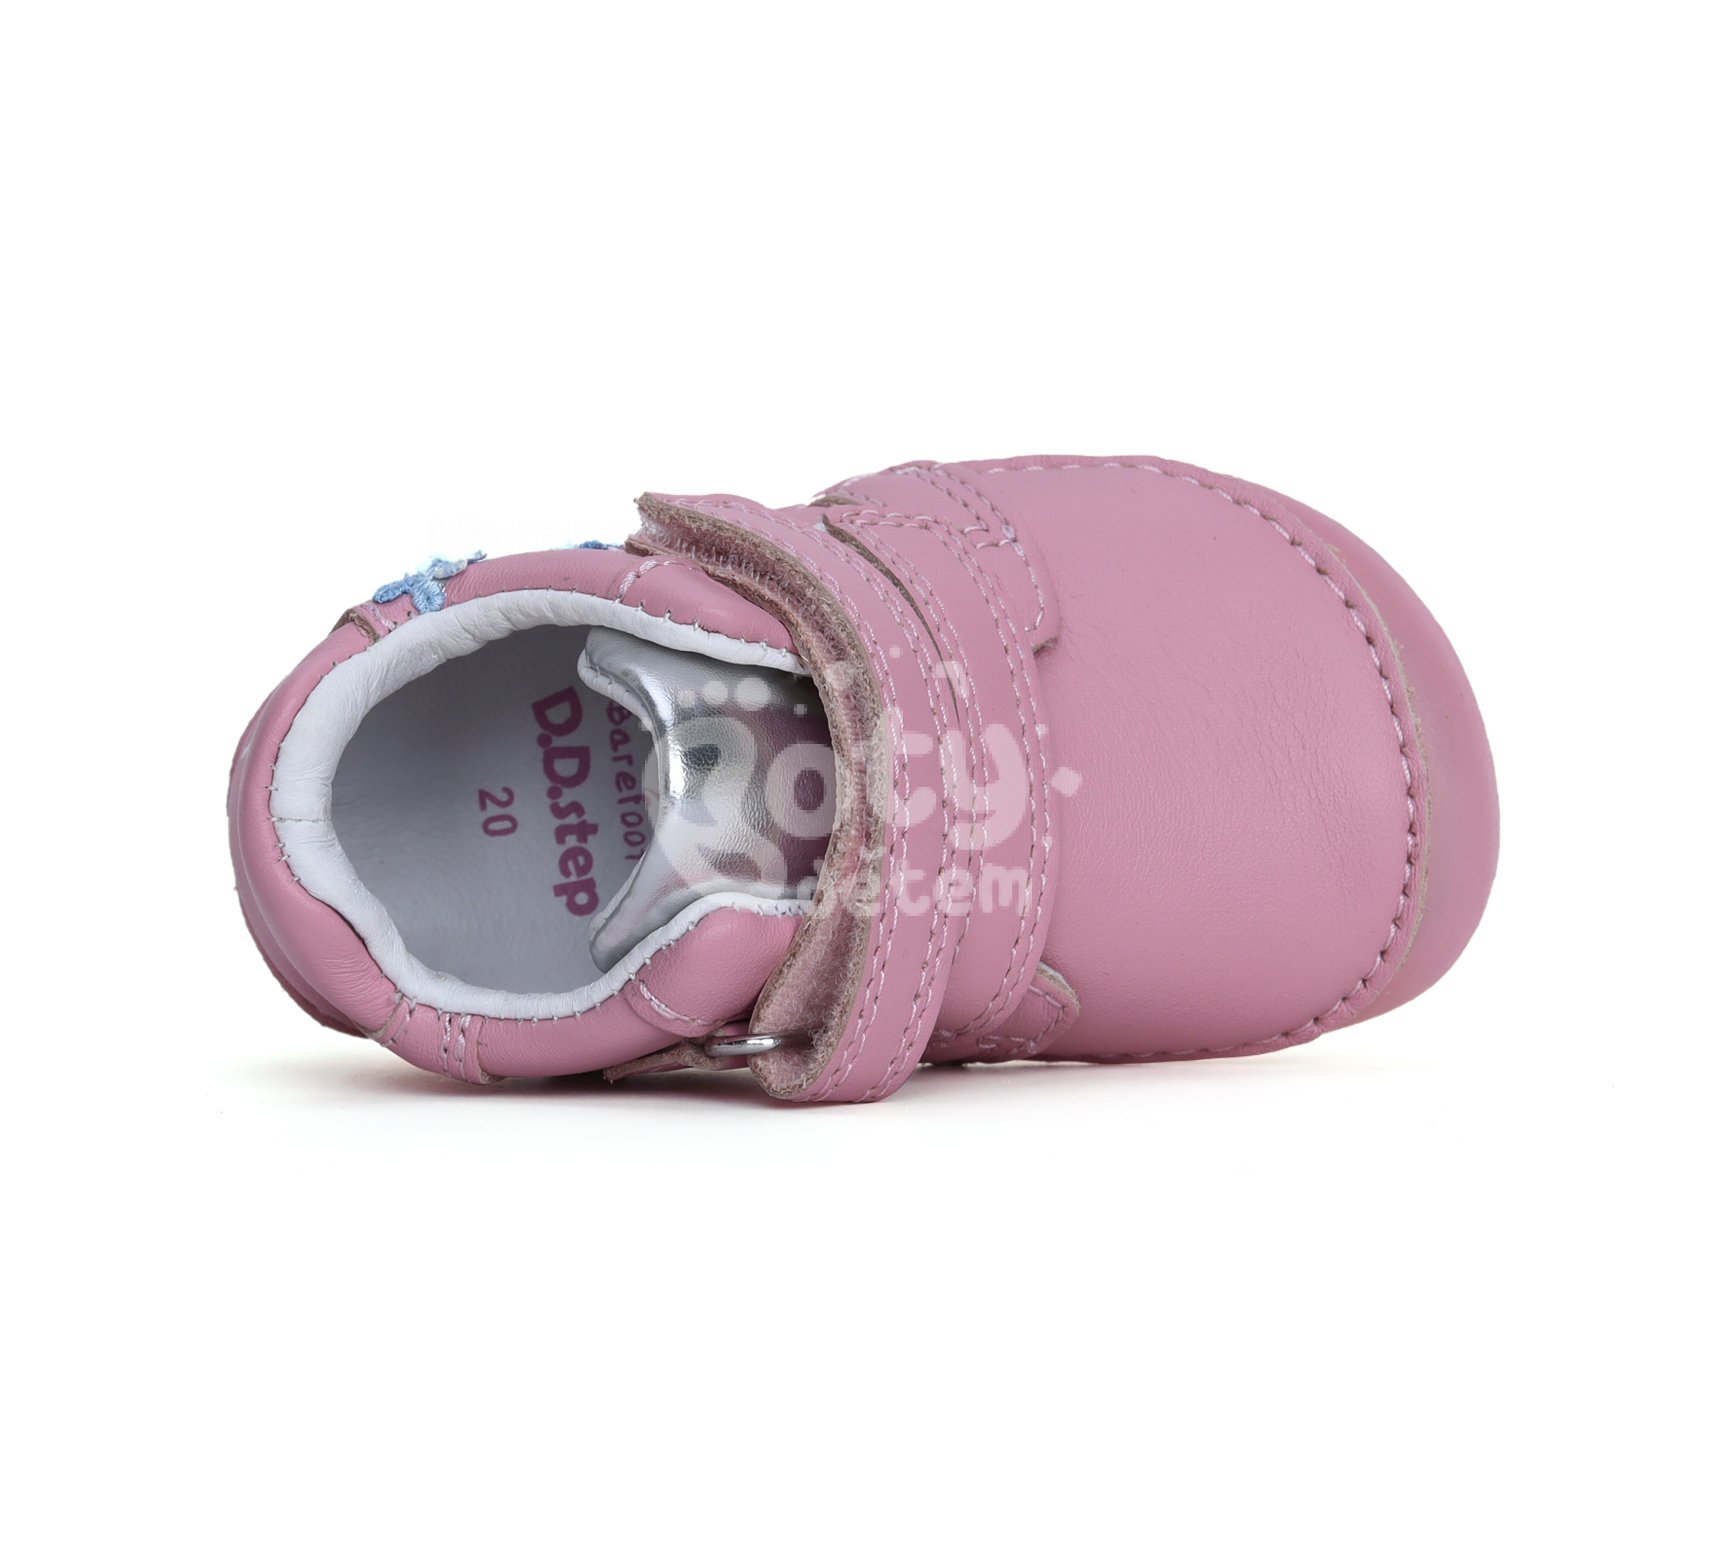 Kožené barefoot boty D.D.step S070-41484A Pink